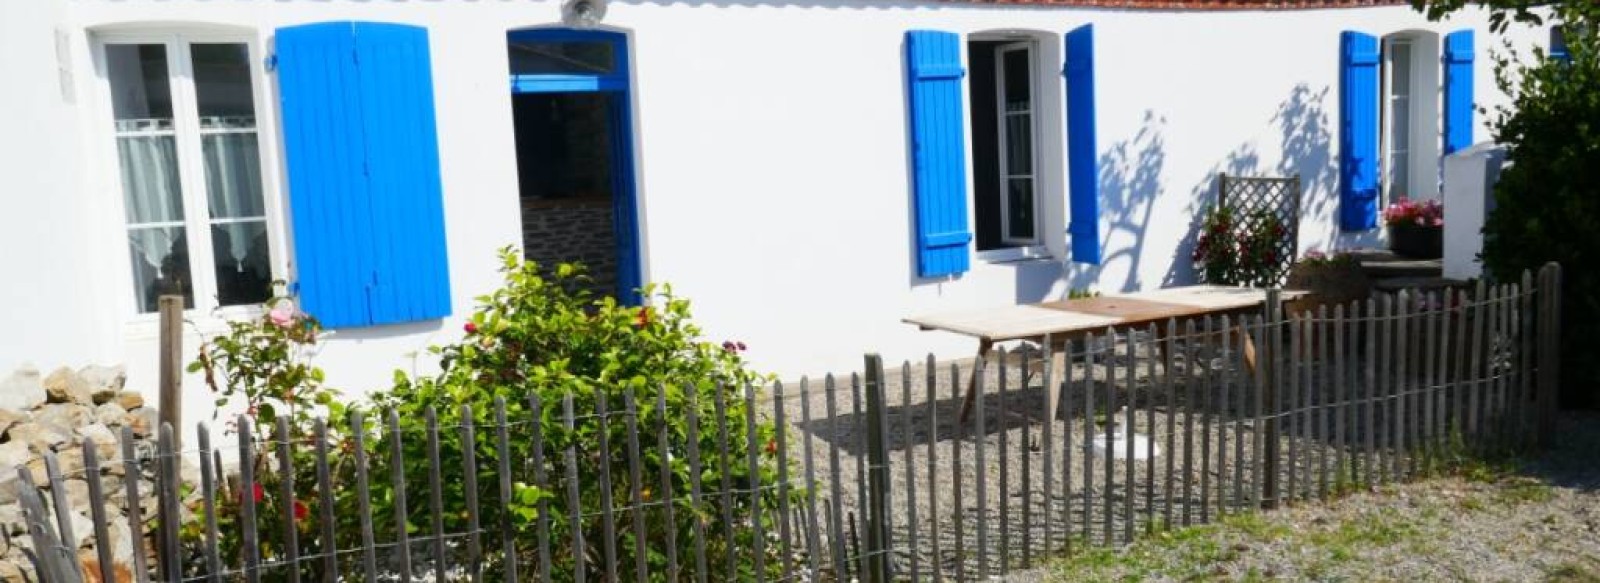 Charmante maison a deux pas de la plage de Luzeronde sur l'Ile de Noirmoutier